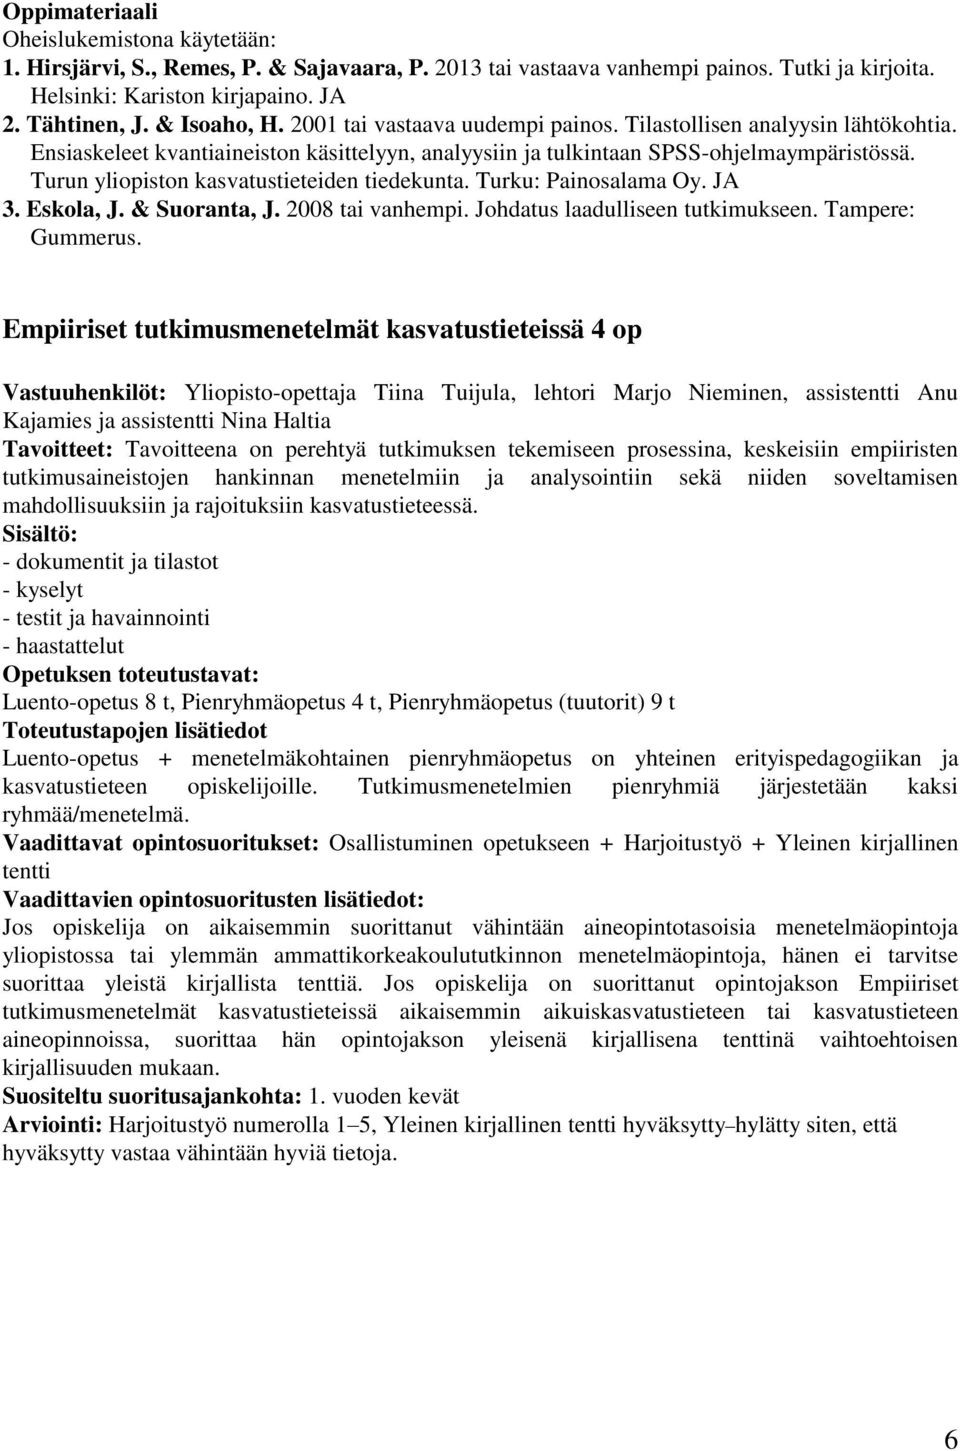 Turun yliopiston kasvatustieteiden tiedekunta. Turku: Painosalama Oy. JA 3. Eskola, J. & Suoranta, J. 2008 tai vanhempi. Johdatus laadulliseen tutkimukseen. Tampere: Gummerus.